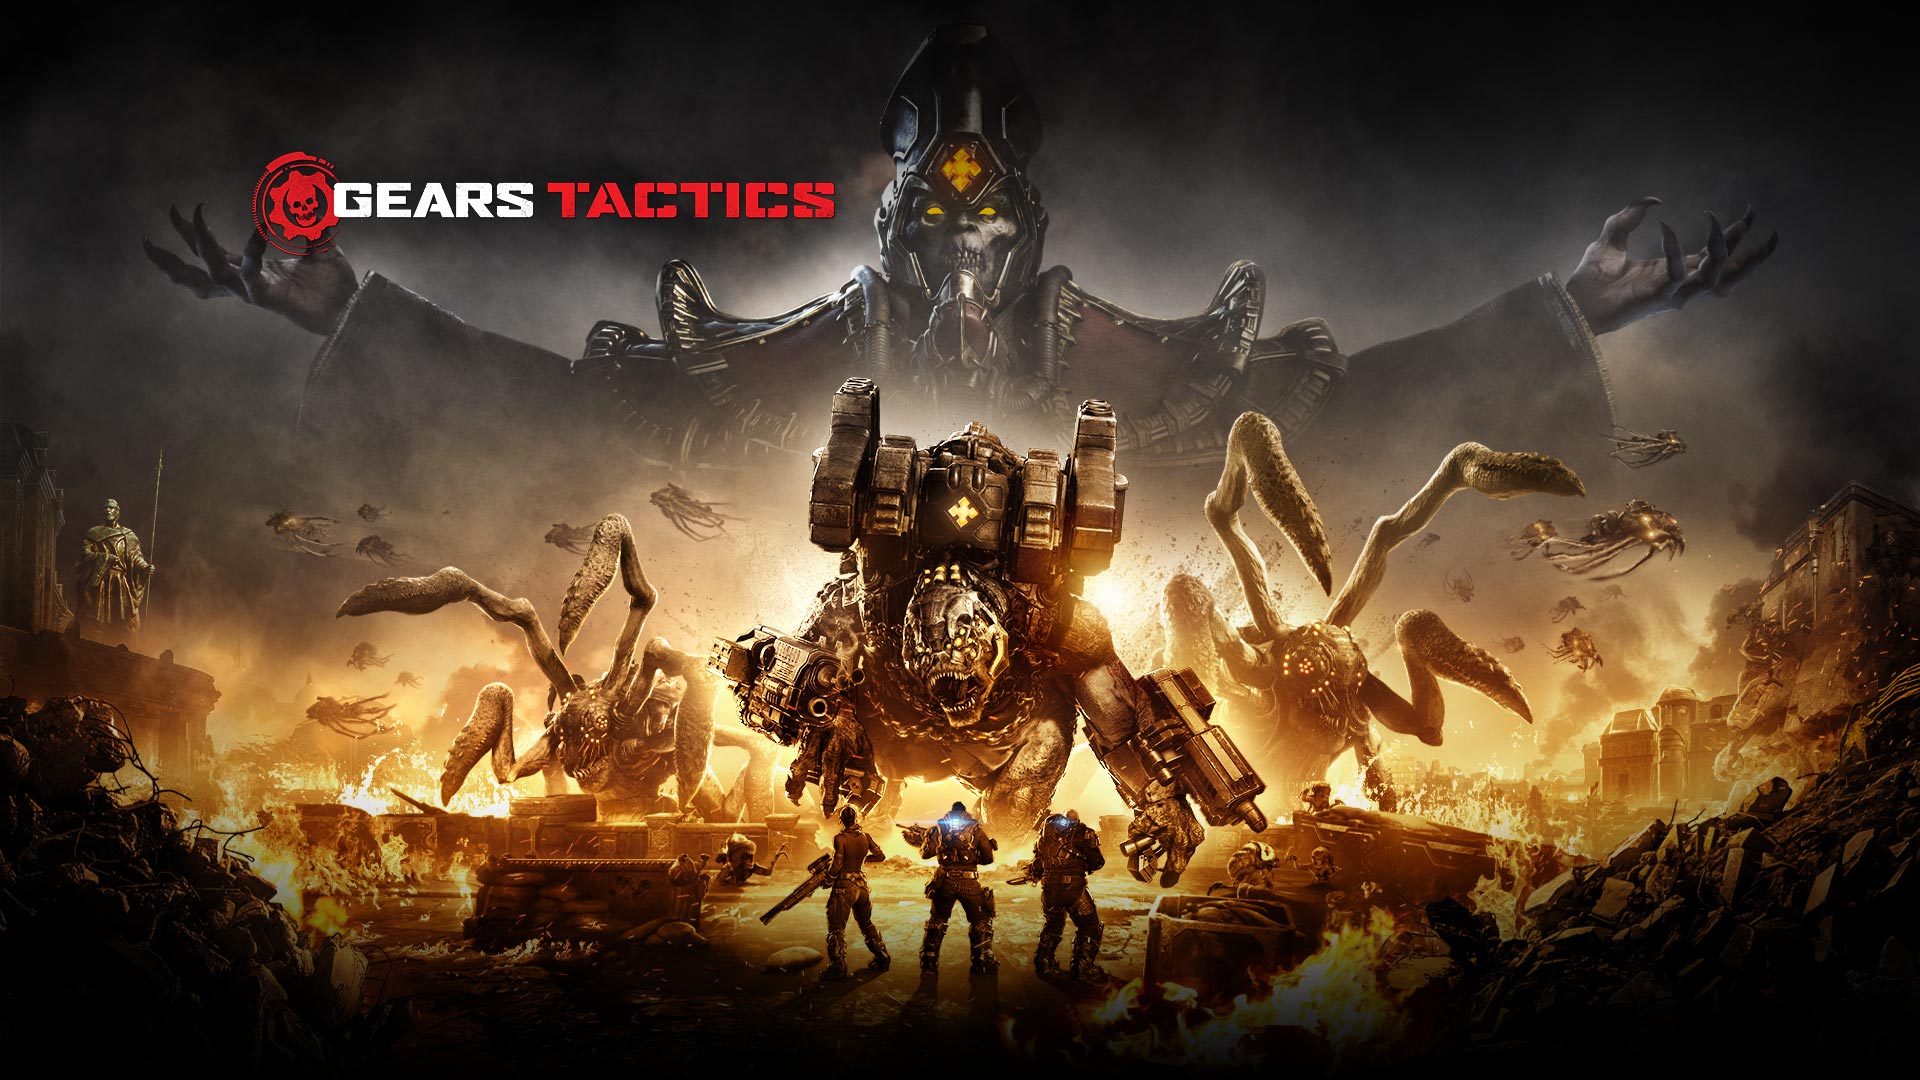 Gears Tactics 로고, 주변이 불타는 동안 몇 대형 몬스터와 싸우려고 하는 3명의 캐릭터 장면